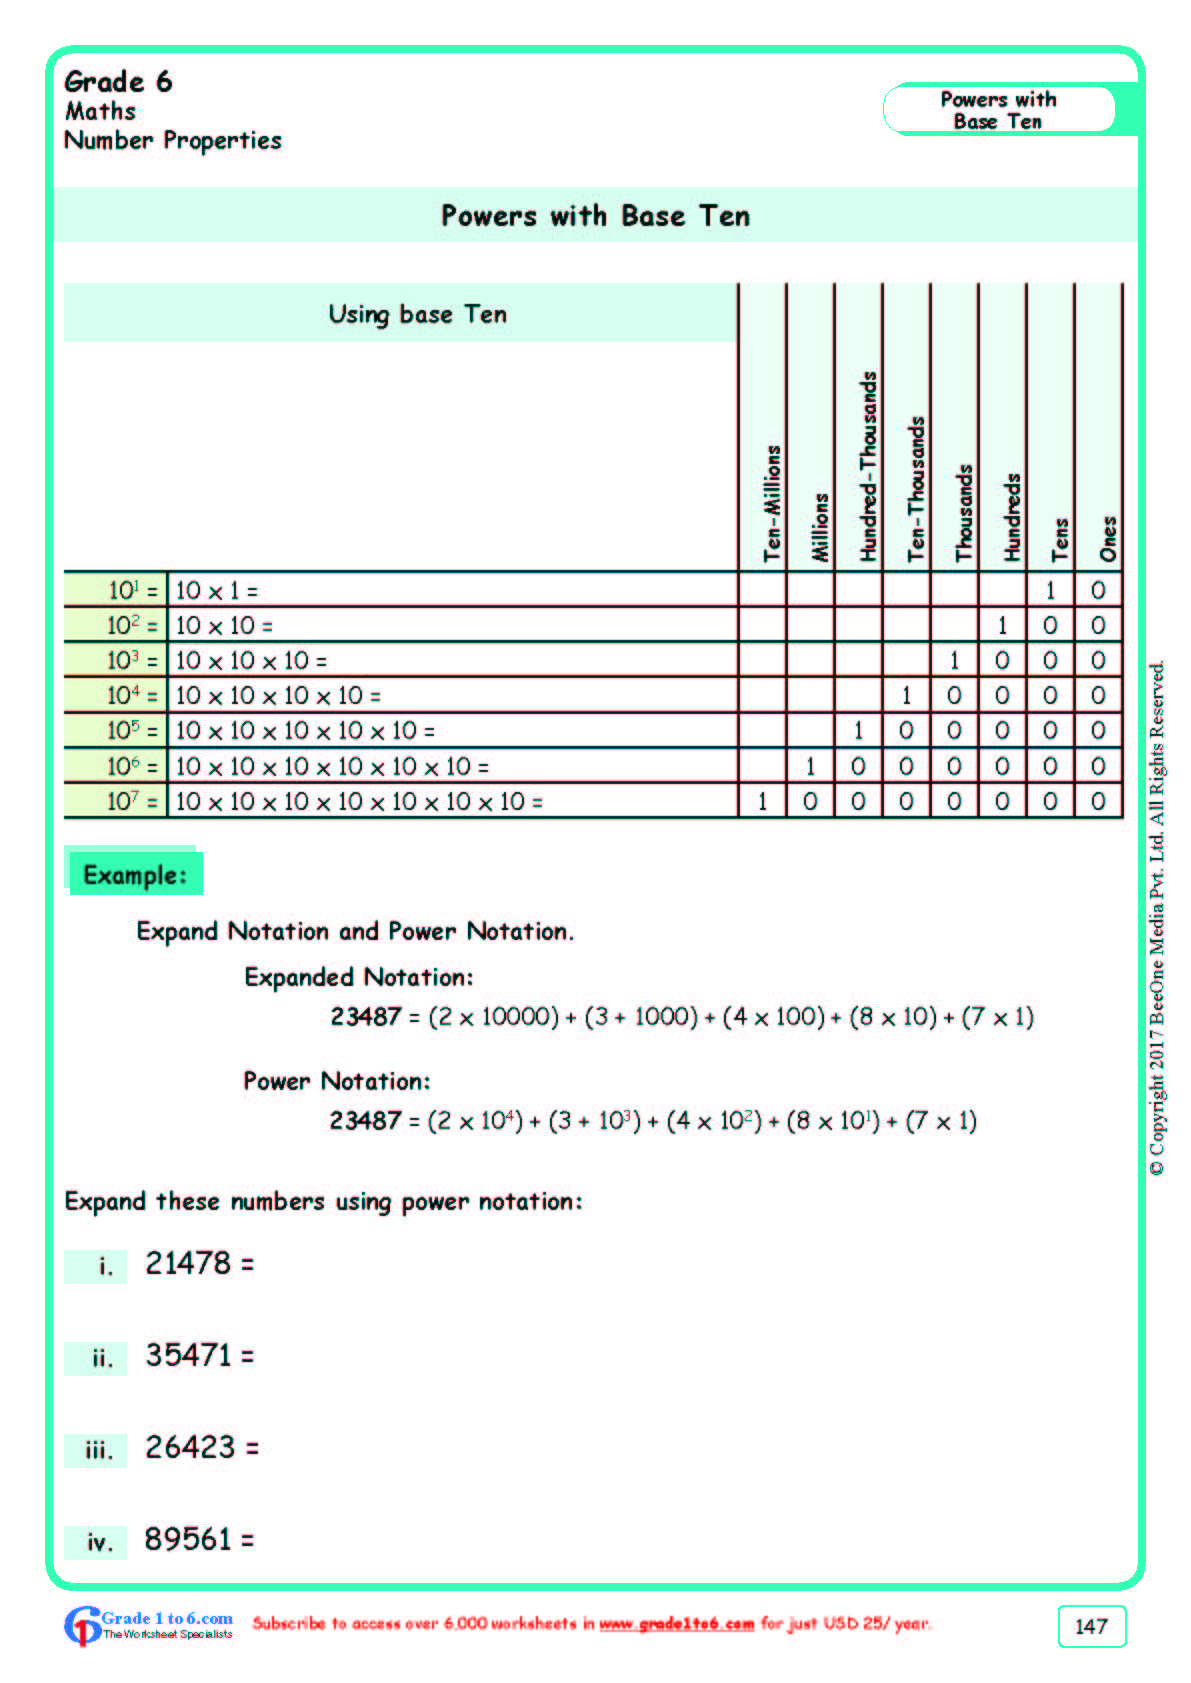 26-ib-grade-6-math-worksheets-png-the-math